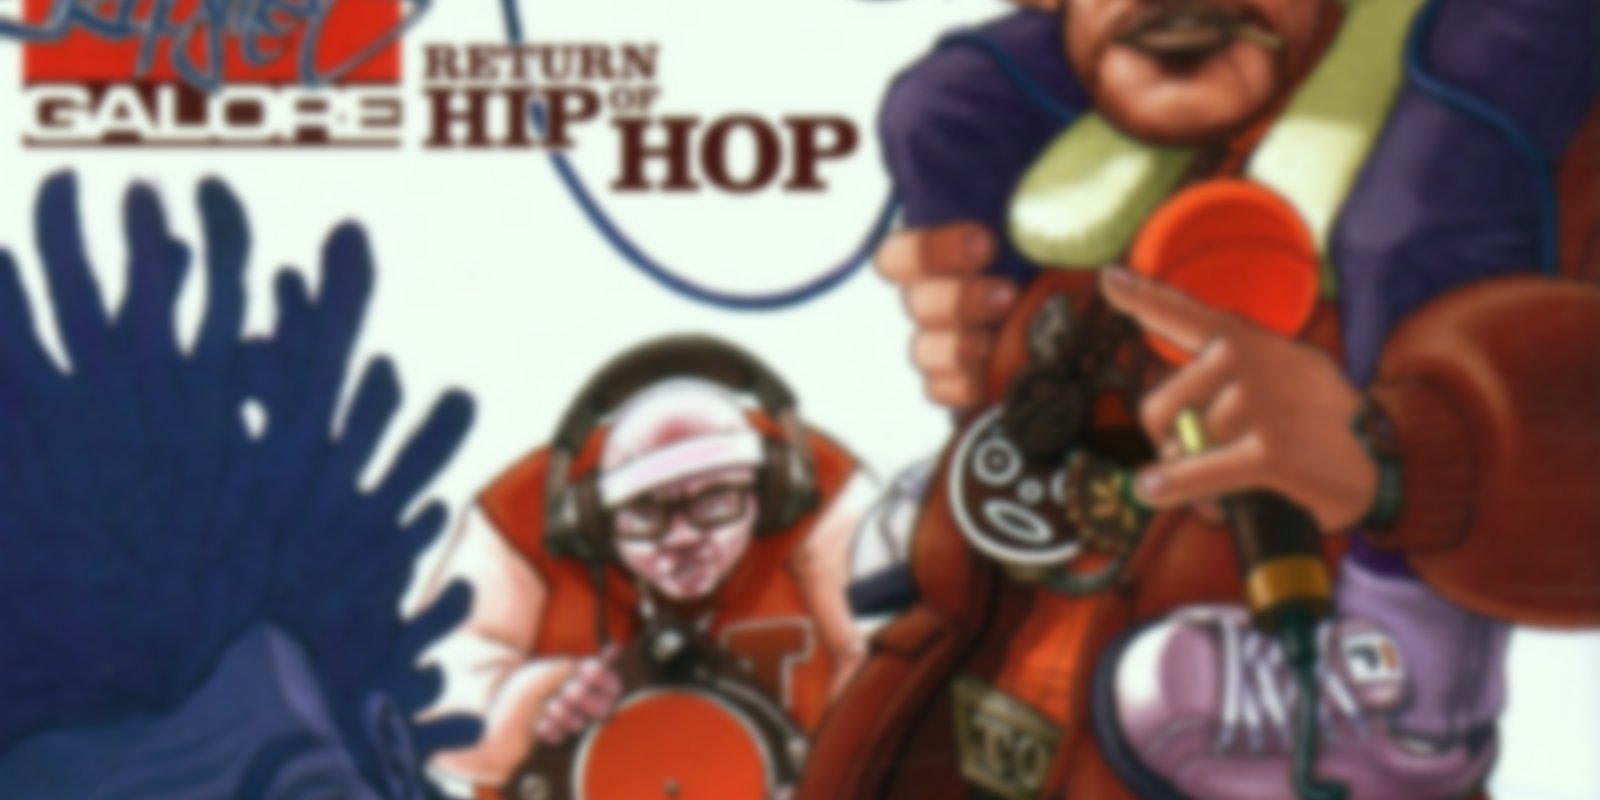 Rhymes Galore - Return of Hip Hop